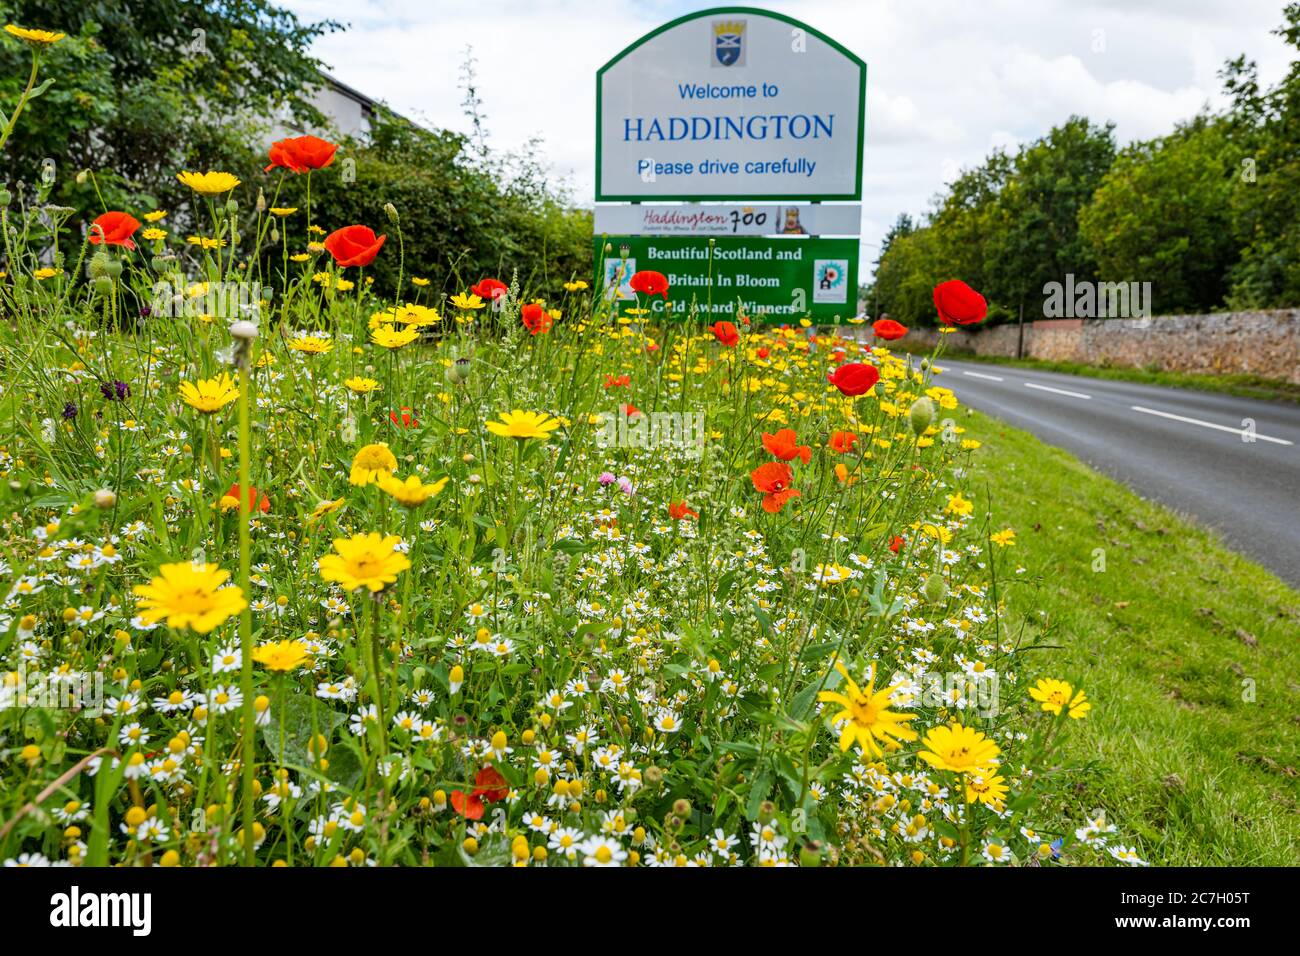 Fleurs sauvages au bord de la route au niveau du panneau de la ville, avec le panneau de bienvenue de Haddington, East Lothian, Écosse, Royaume-Uni Banque D'Images